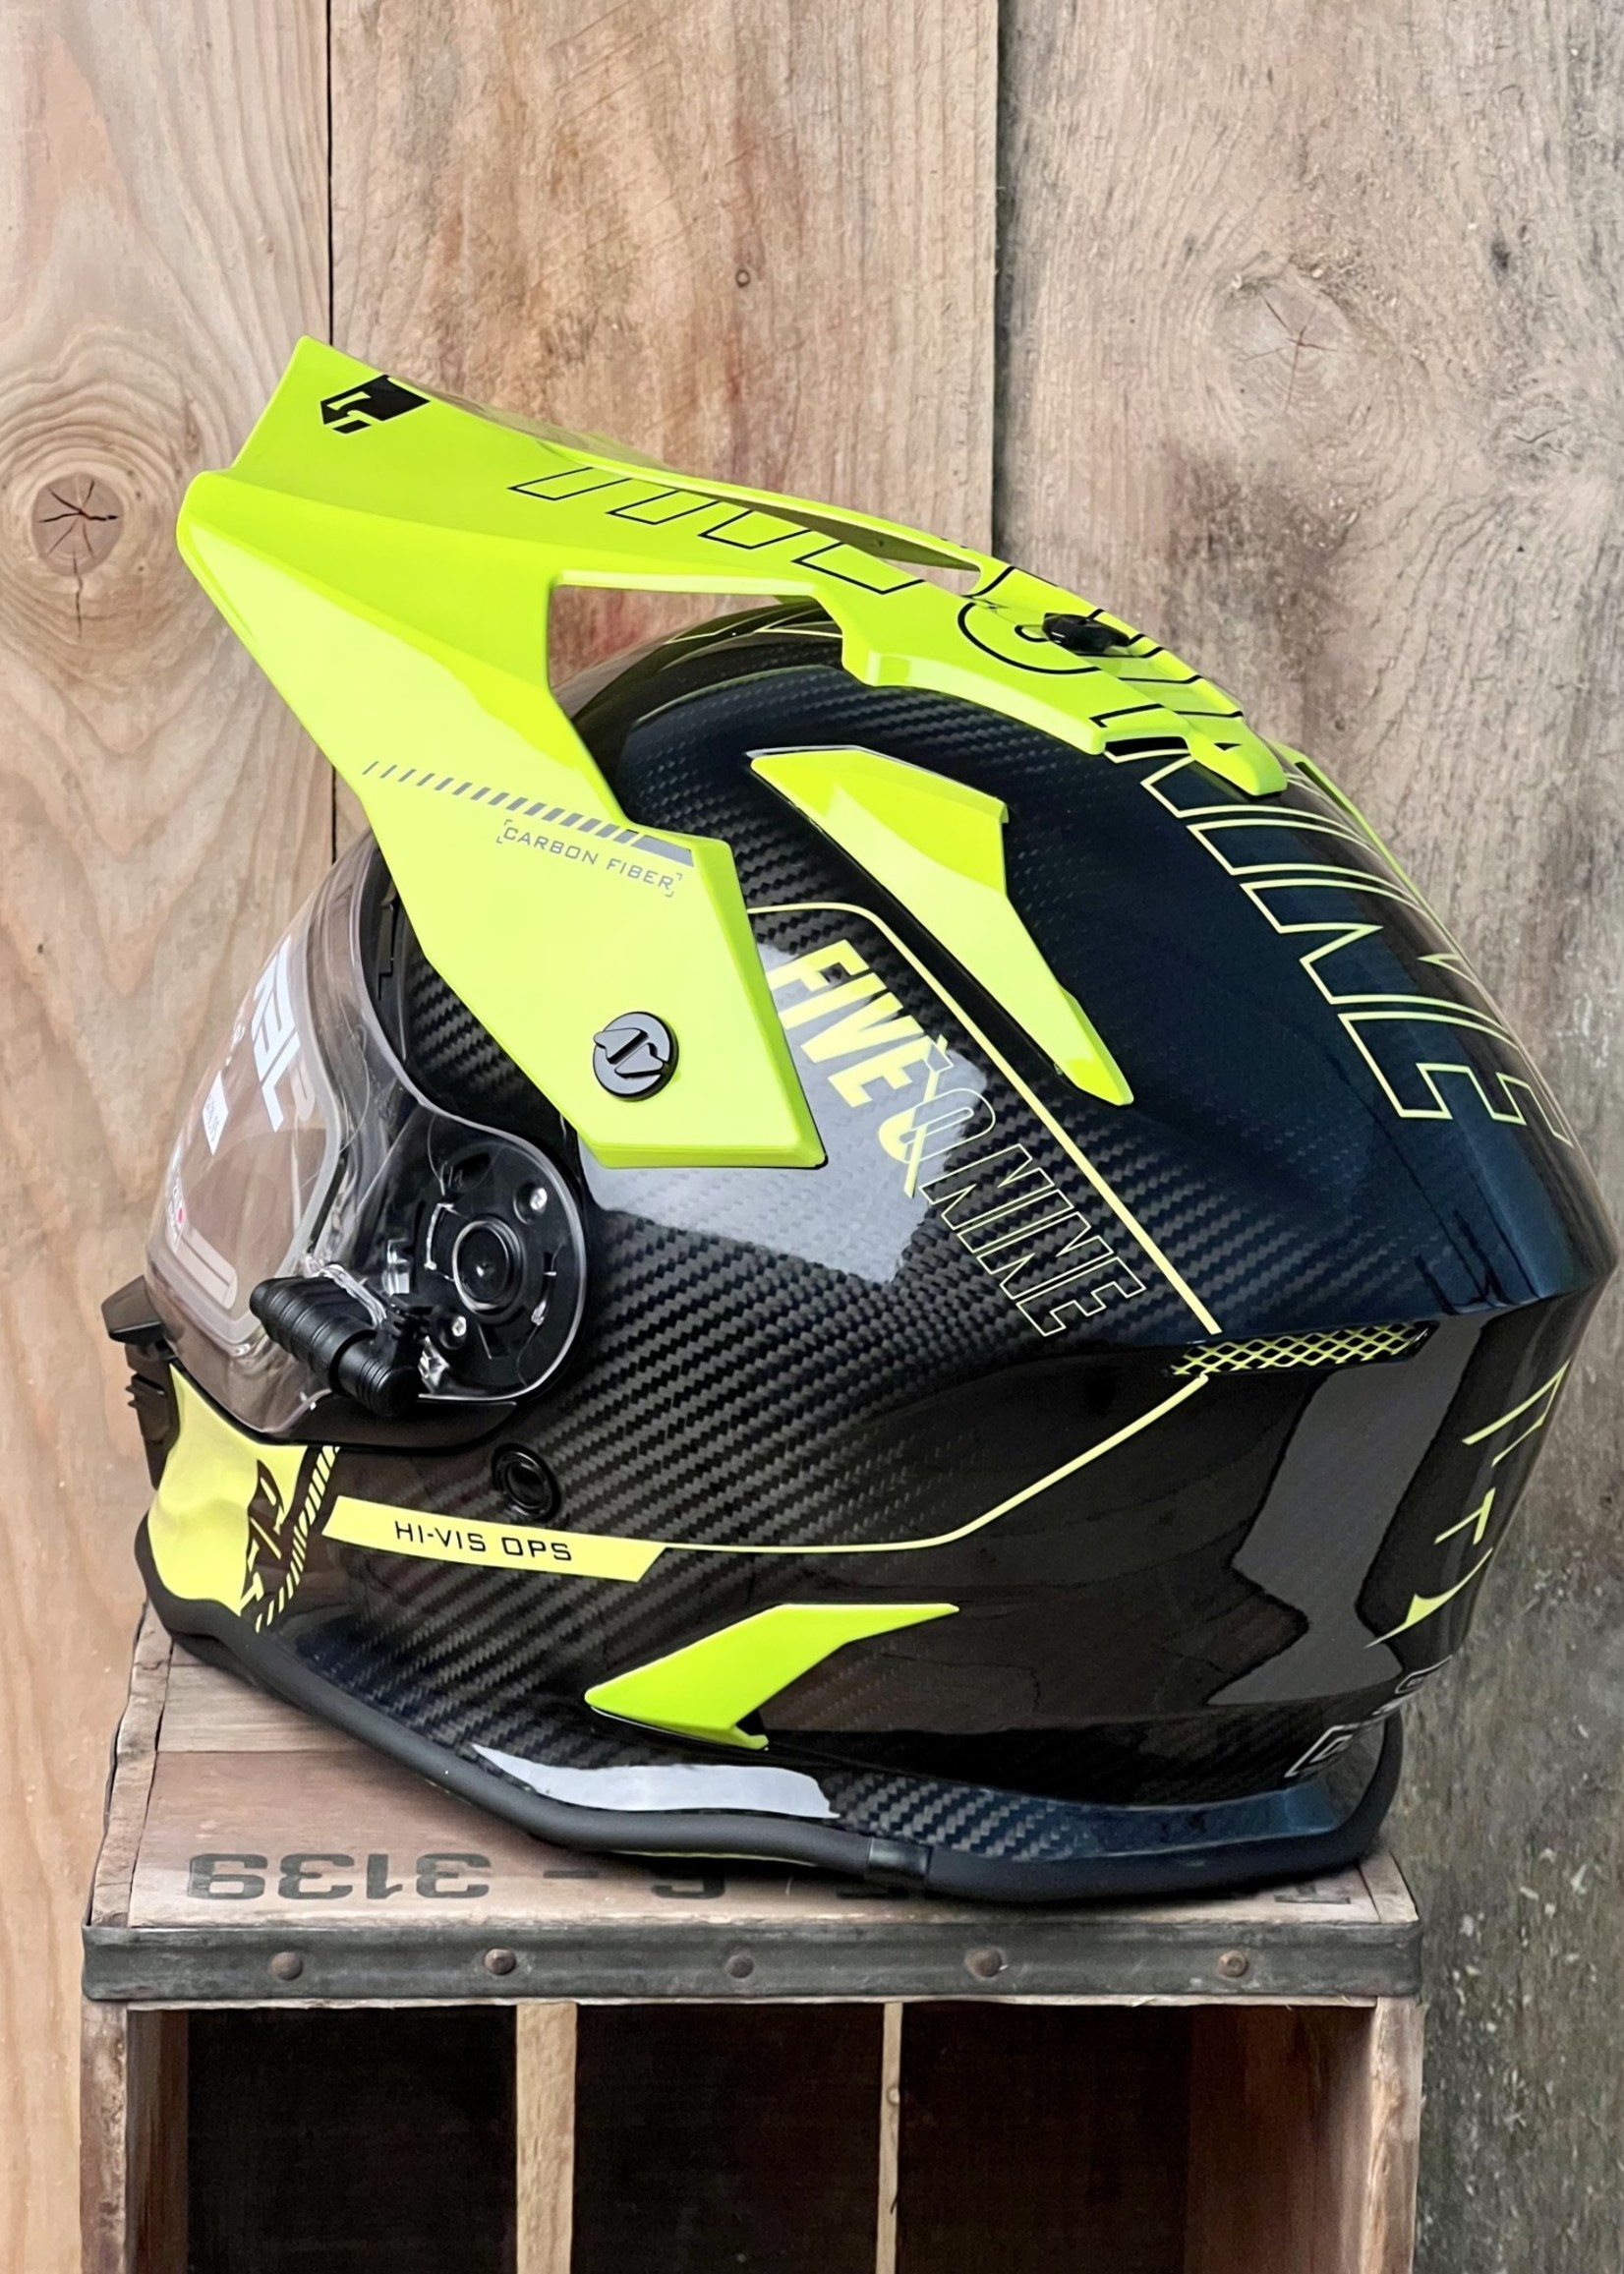 509 509 Delta R3L Carbon Fiber Helmet